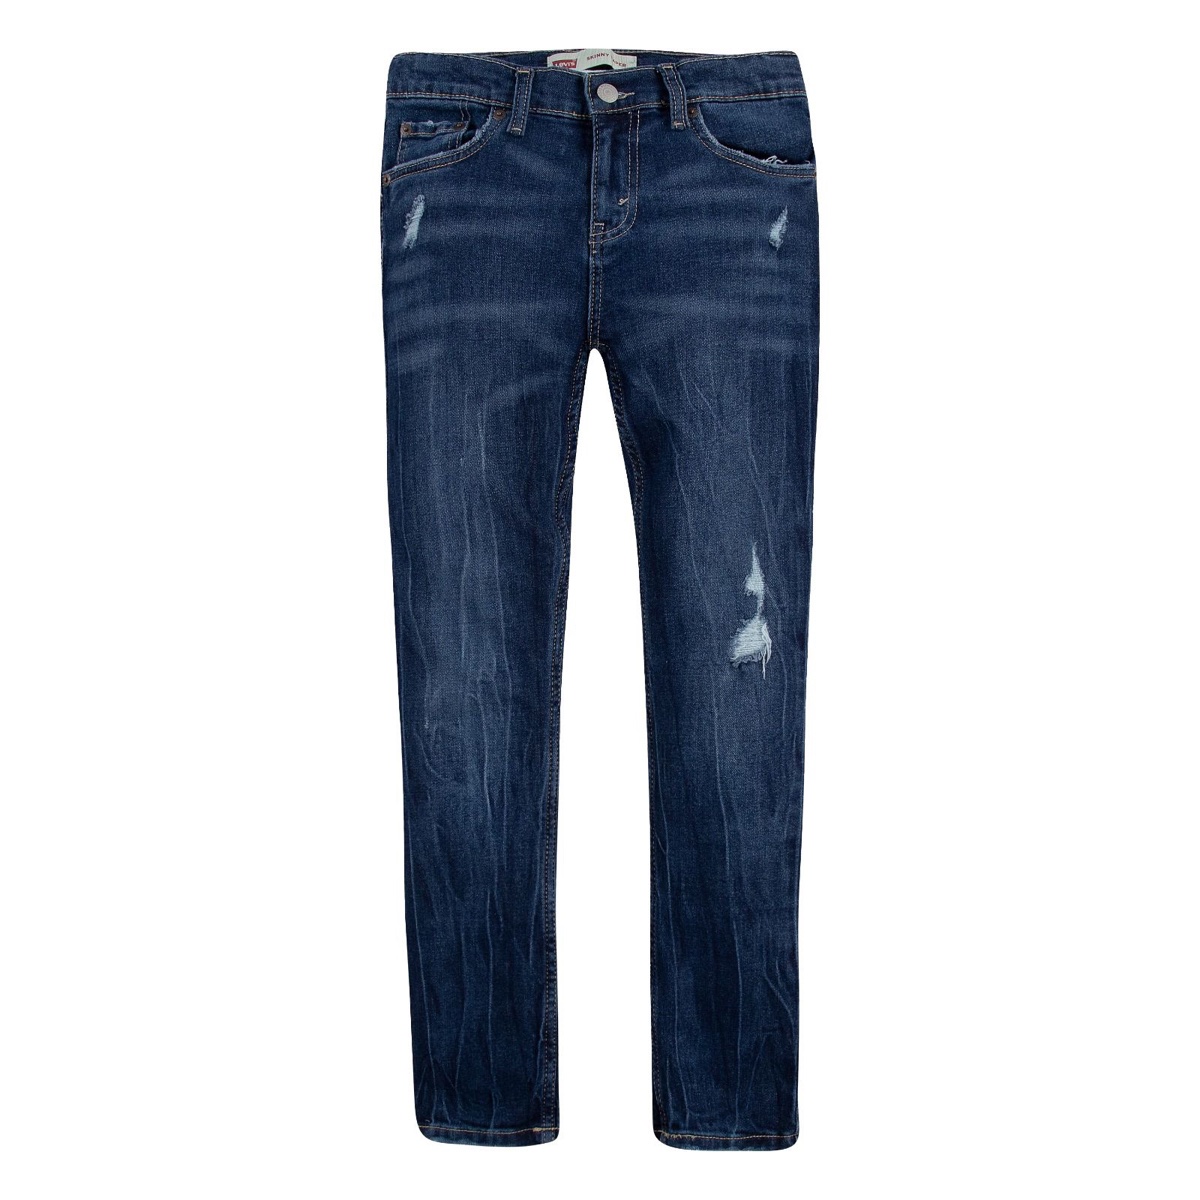 ג׳ינס כחול משופשף LEVIS - מידות 1-8